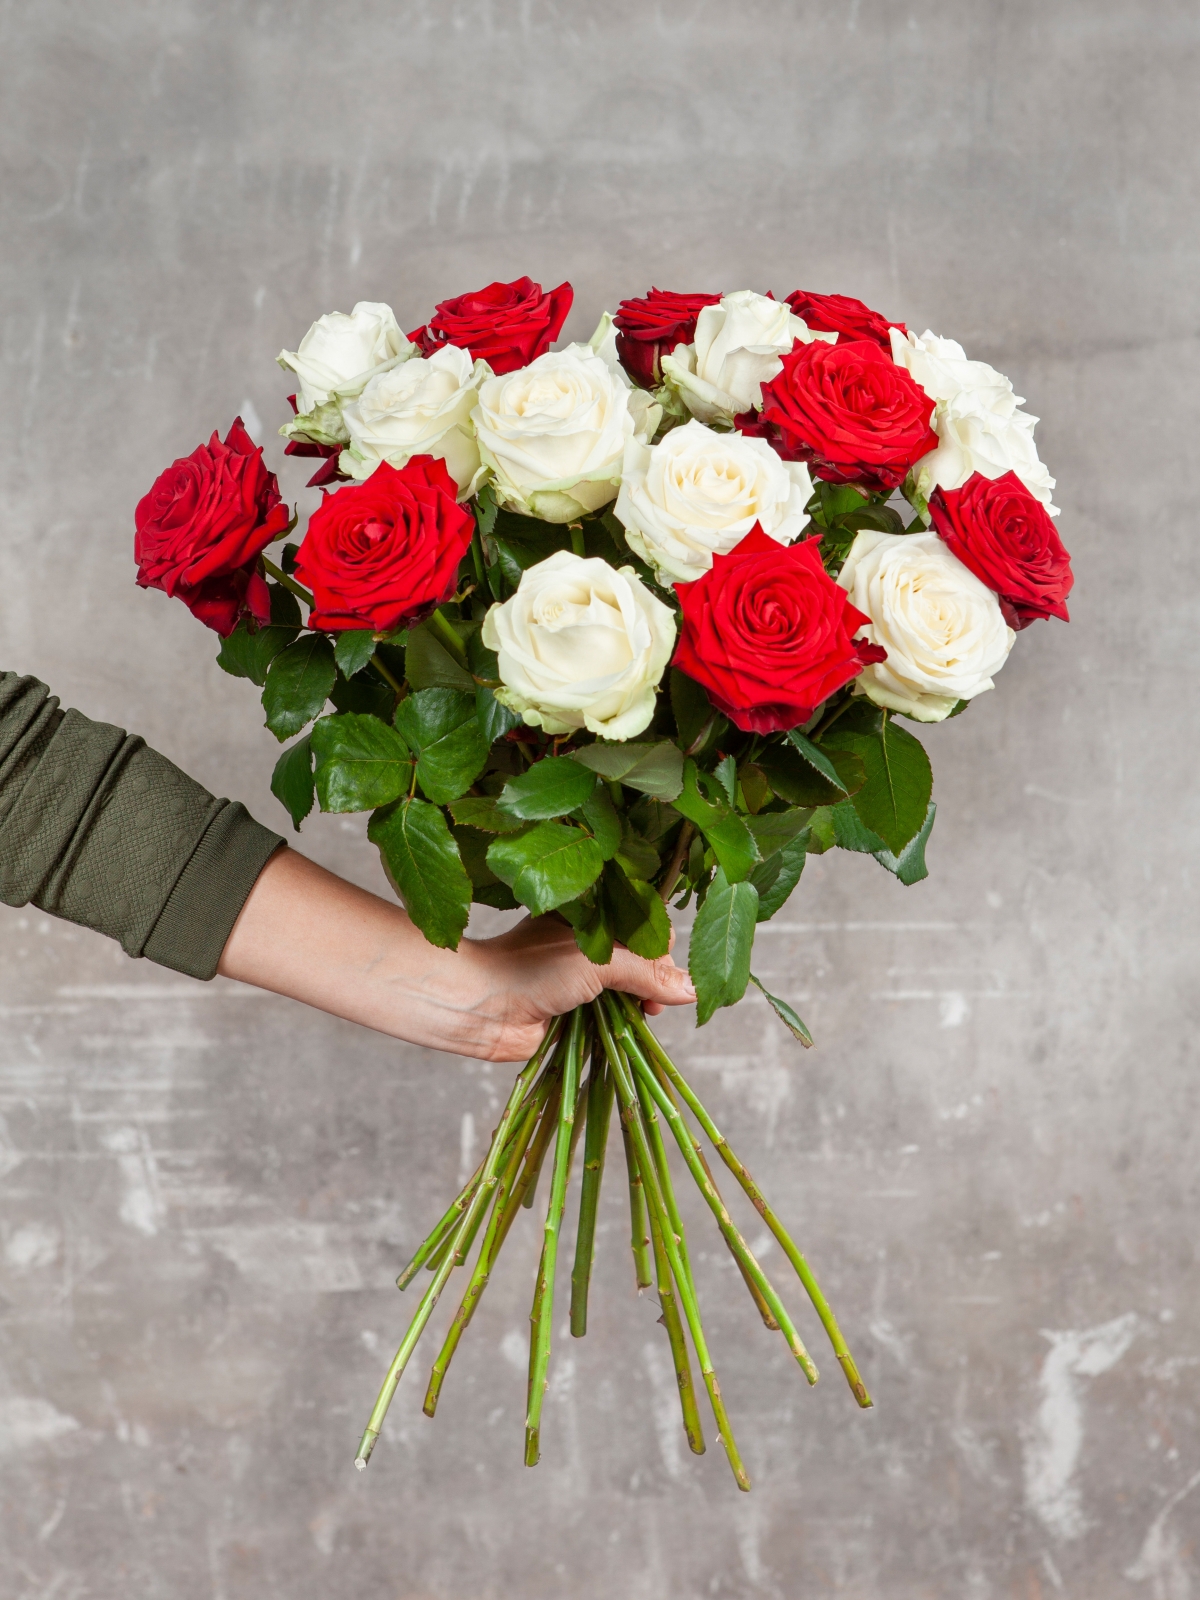 films Ontwijken Kostbaar BloemenVaria Boeket rode rozen Online boeket bloemen bloemstuk bestellen en  landelijk bezorgen